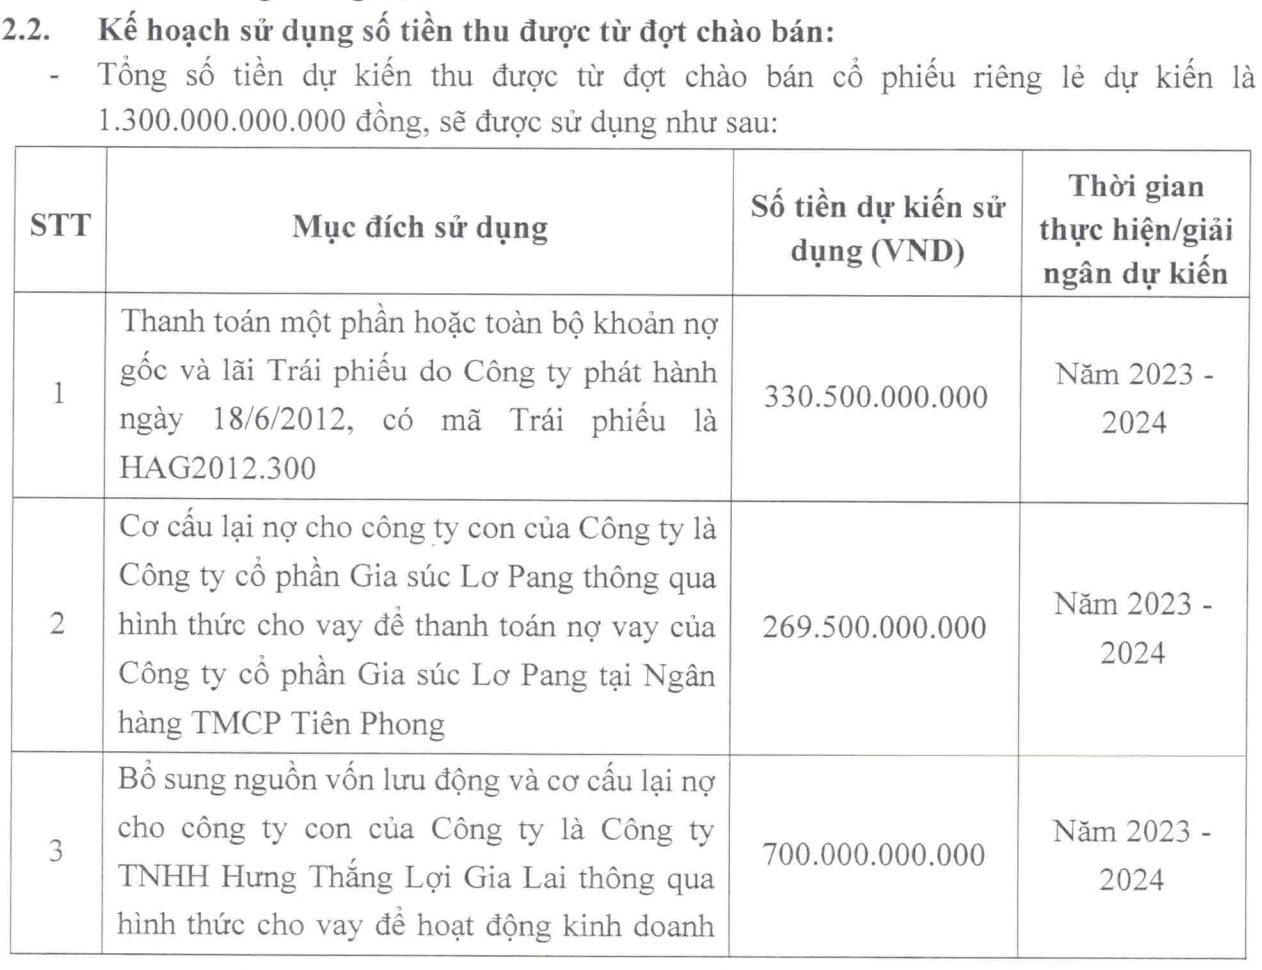 Uỷ ban Chứng khoán chấp thuận phương án phát hành 1.300 tỷ của Hoàng Anh Gia Lai (HAGL)